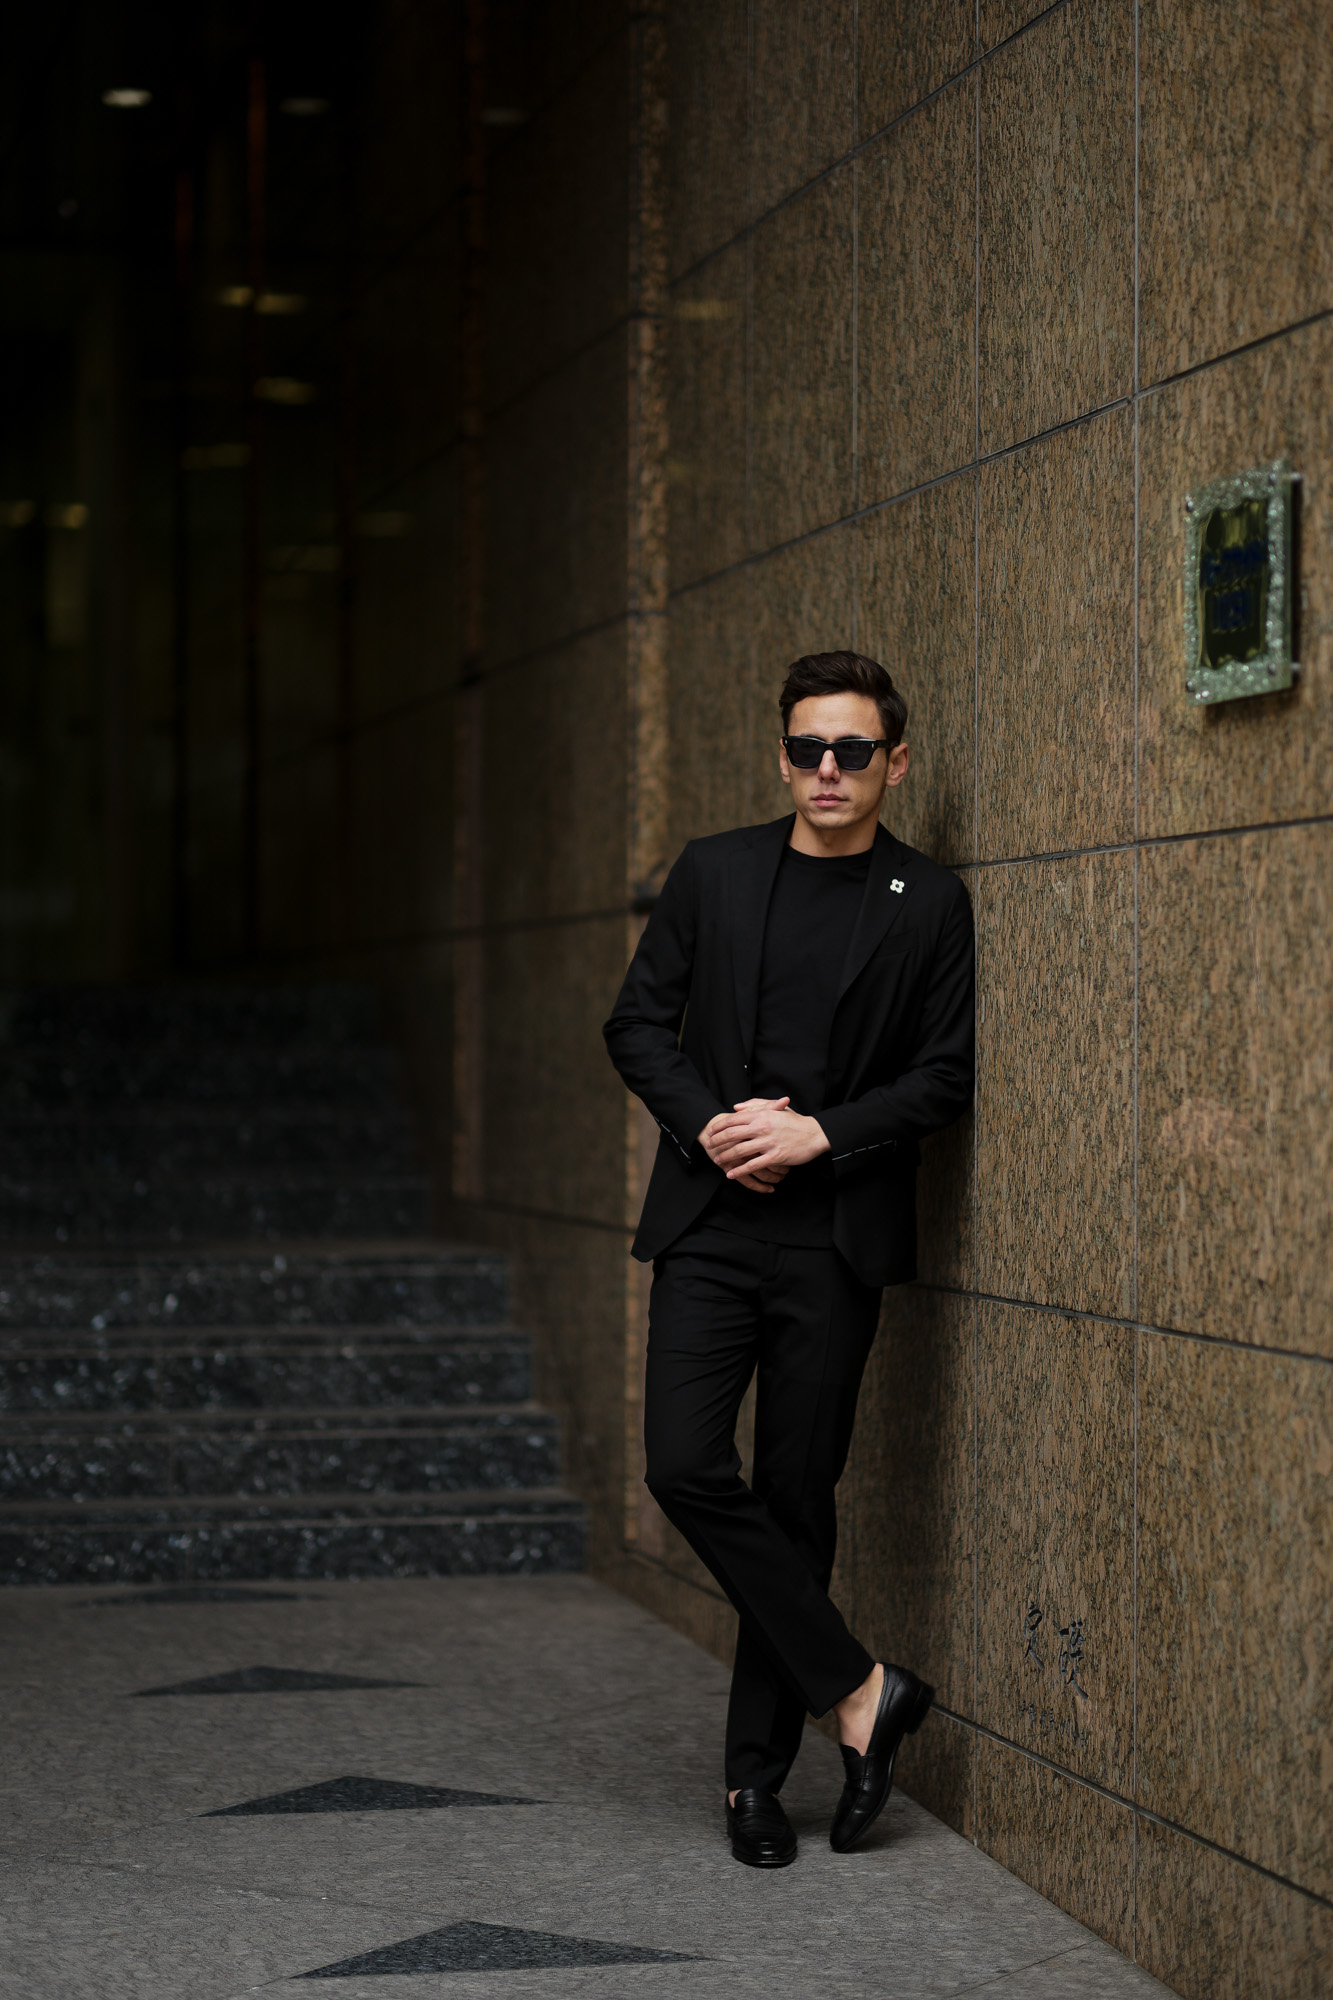 LARDINI (ラルディーニ) EASY WEAR (イージーウエア) Pakkaburu Suit (パッカブル スーツ) トロピカルウール  パッカブル ストレッチ スーツ BLACK (ブラック・306) made in italy (イタリア製) 2019 春夏新作 –  正規通販・名古屋のメンズセレクトショップ Alto e Diritto